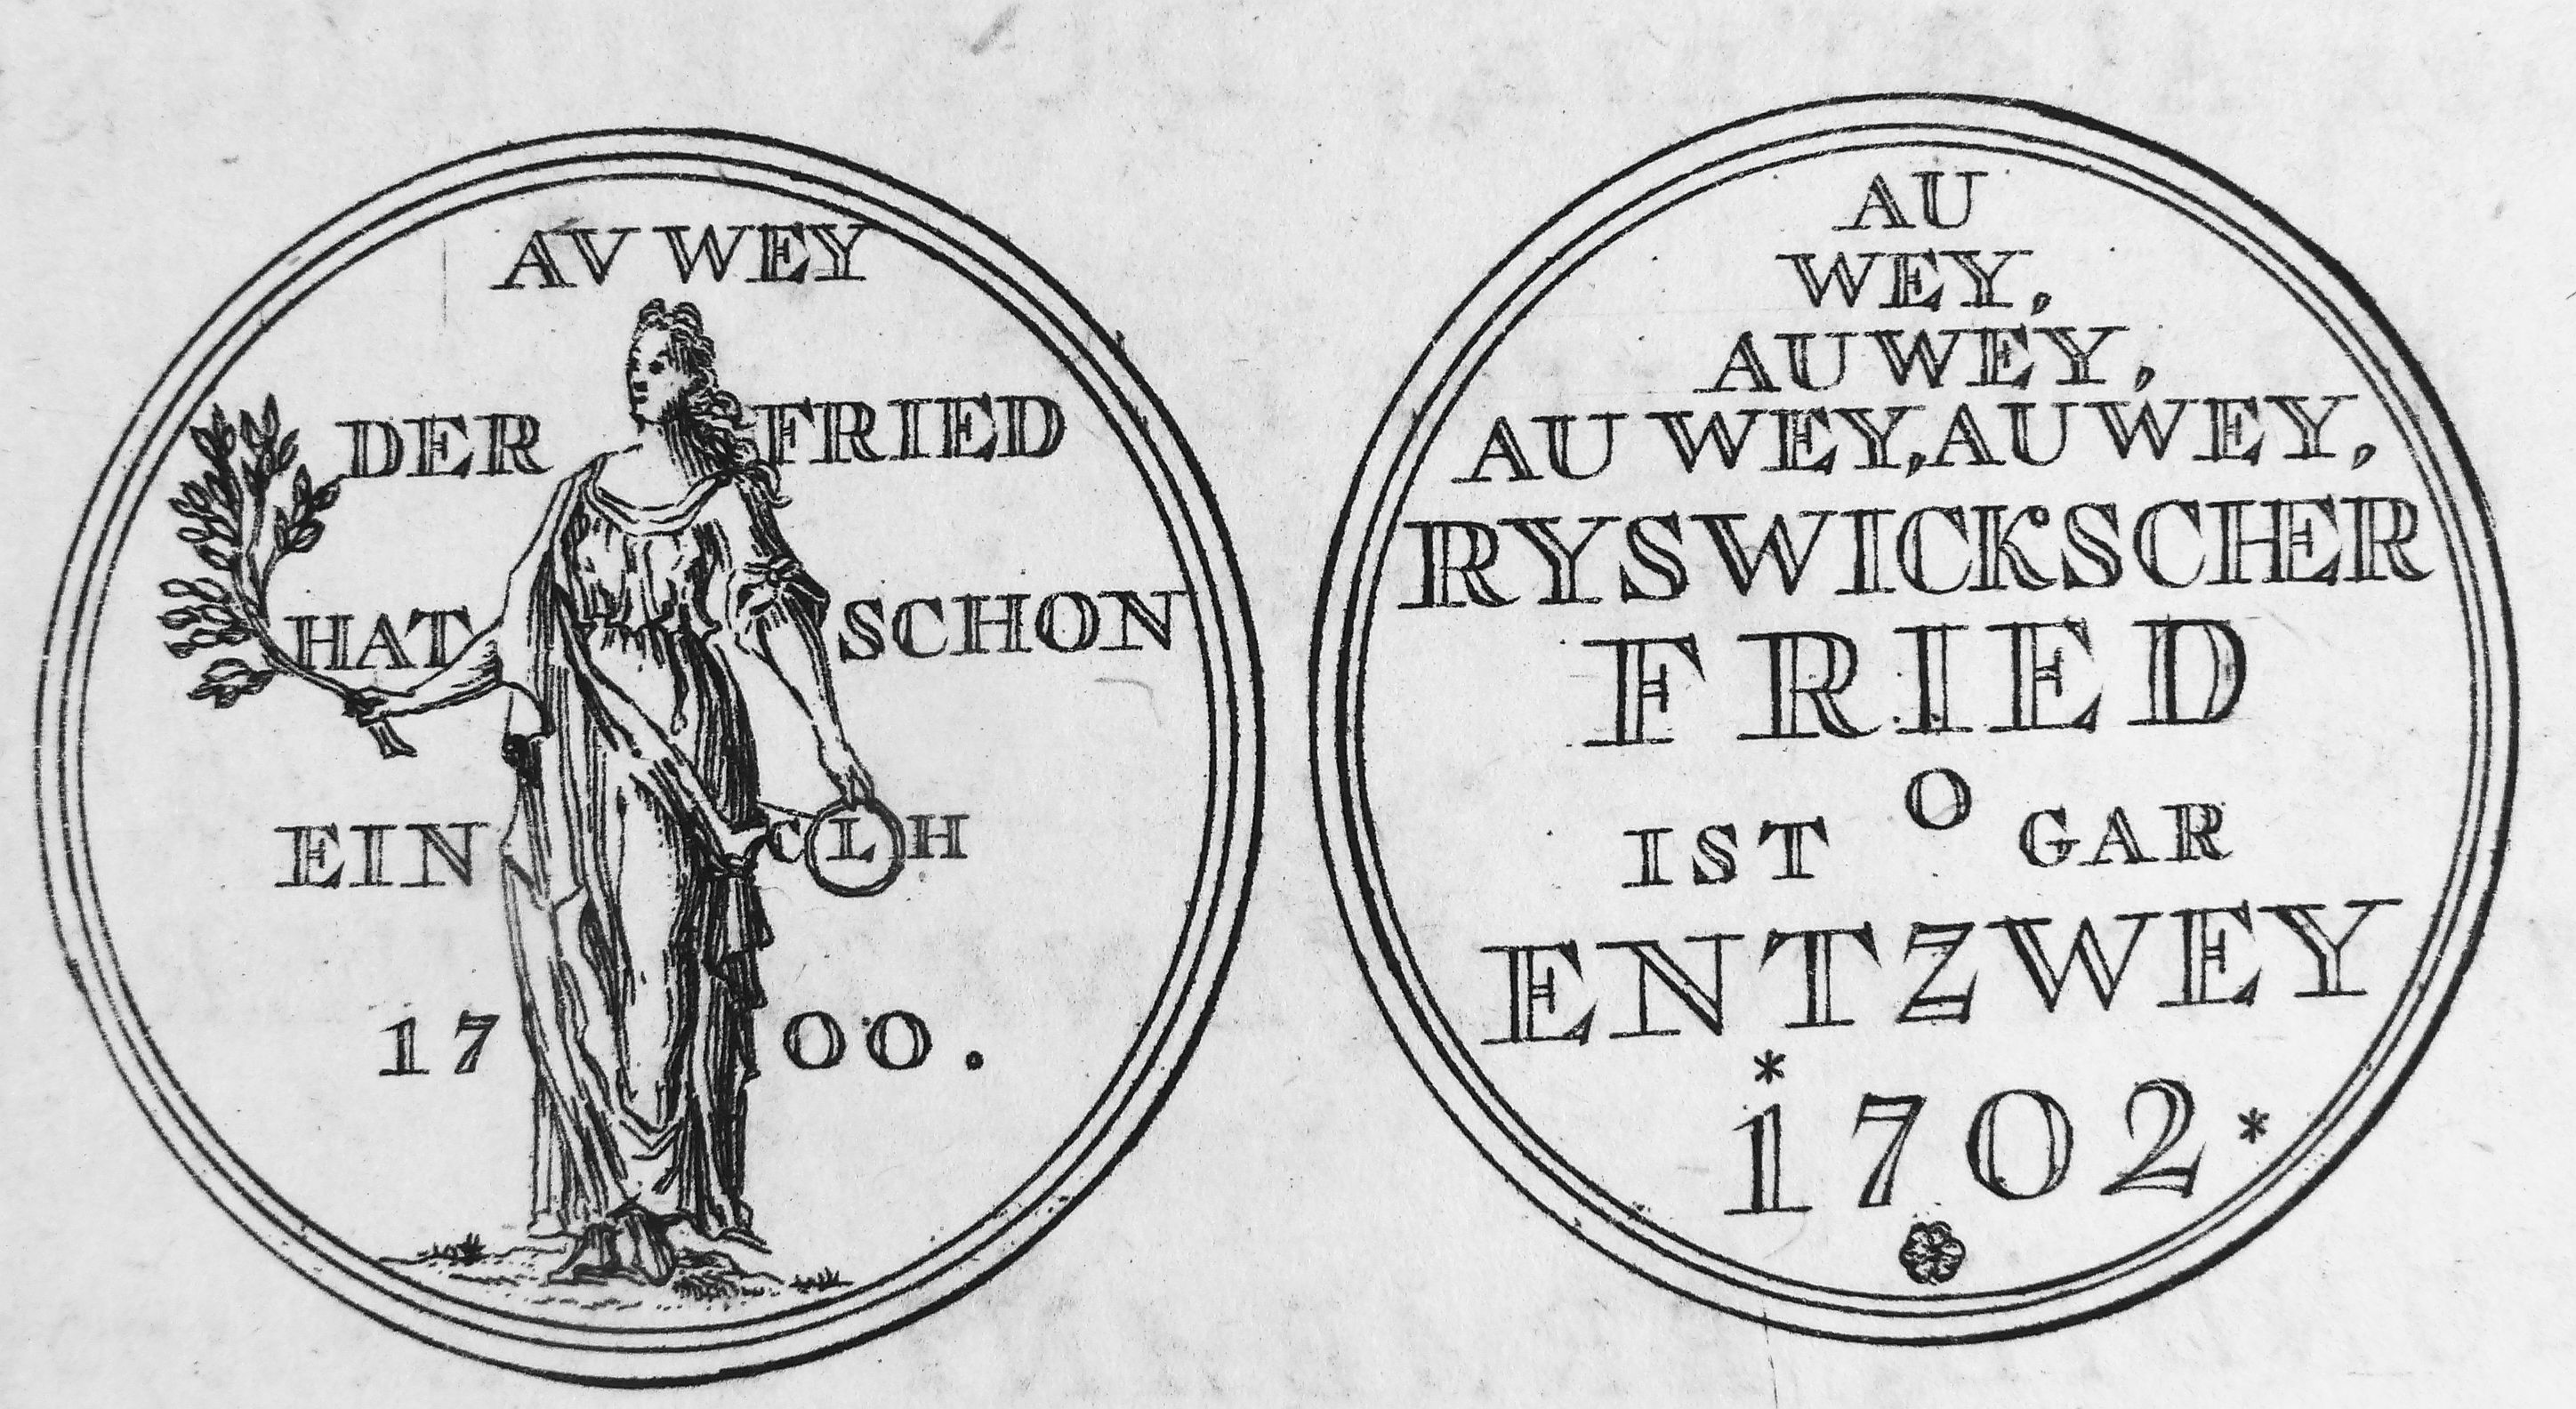 Gedenkpenning op het verbreken van de Vrede van Rijswijk, 1702.